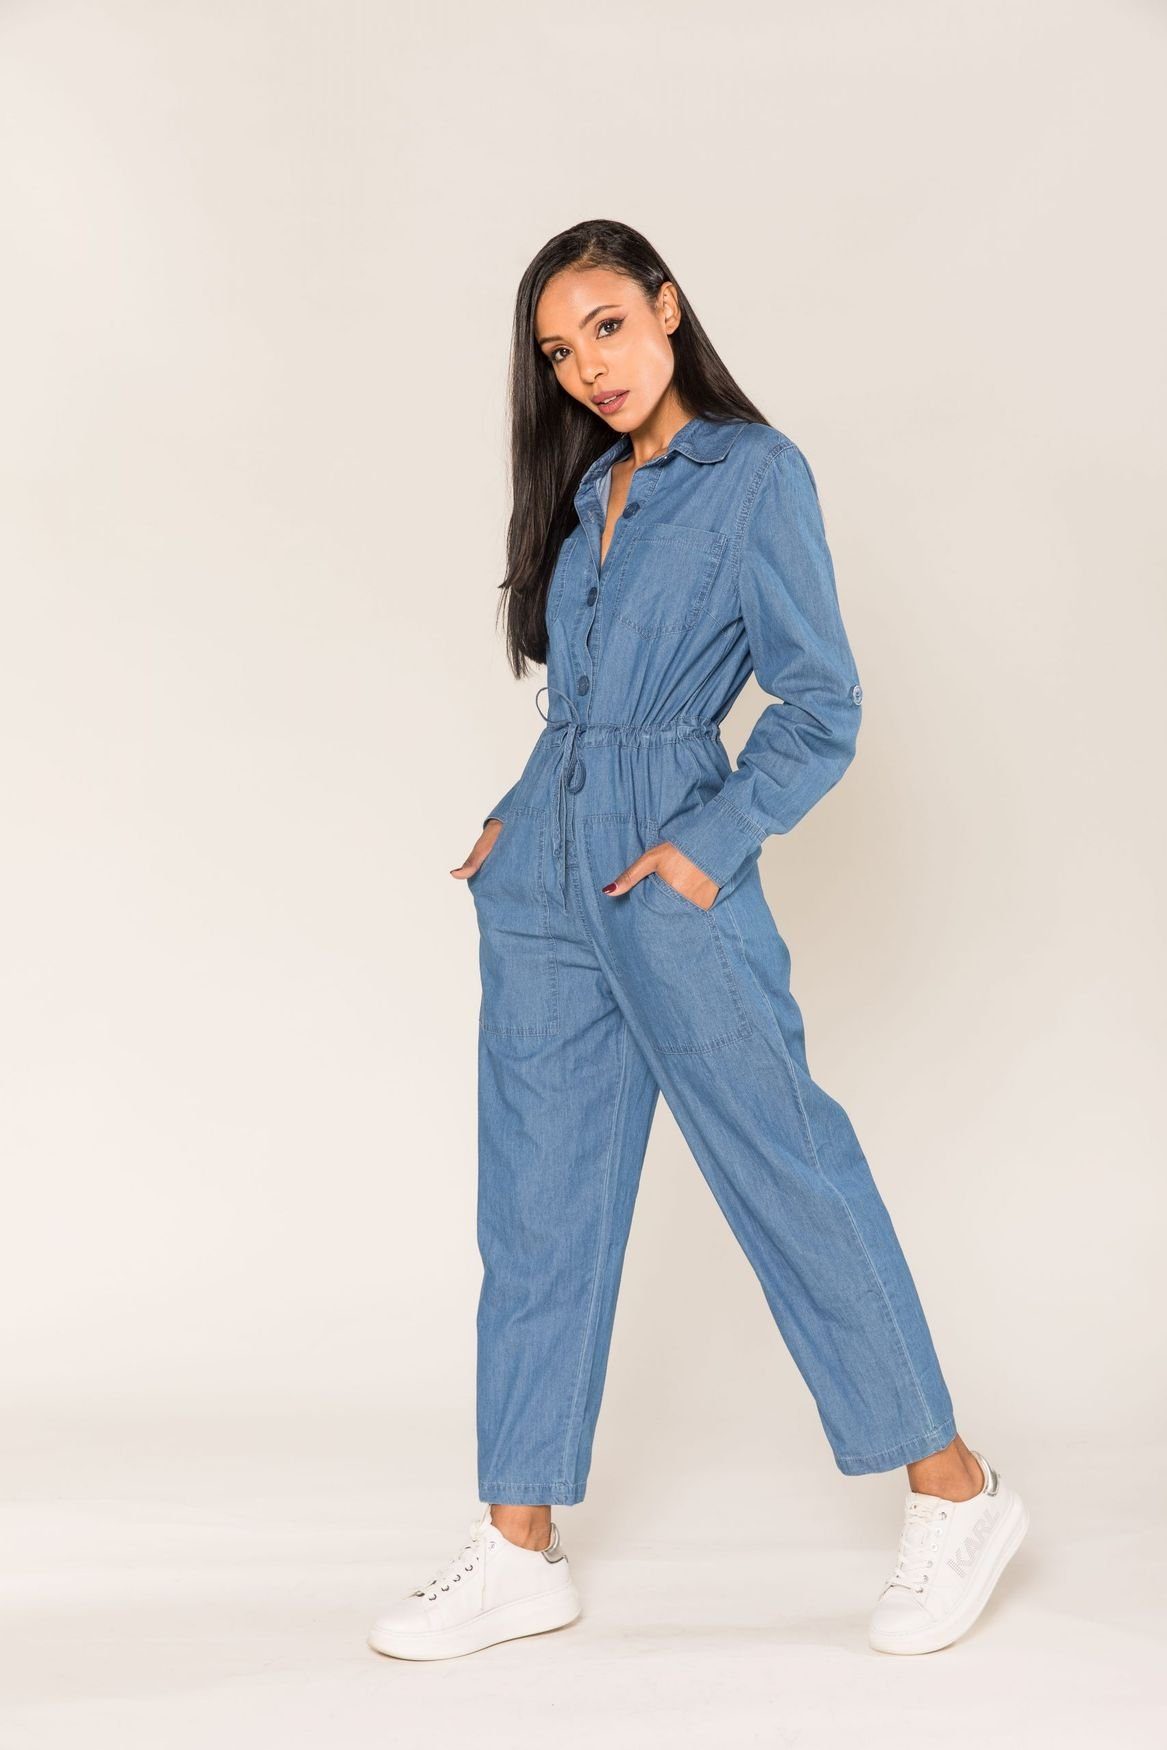 Agolde Denim Jeans Aus Bio-baumwolle in Blau Damen Bekleidung Jumpsuits und Overalls Playsuits 